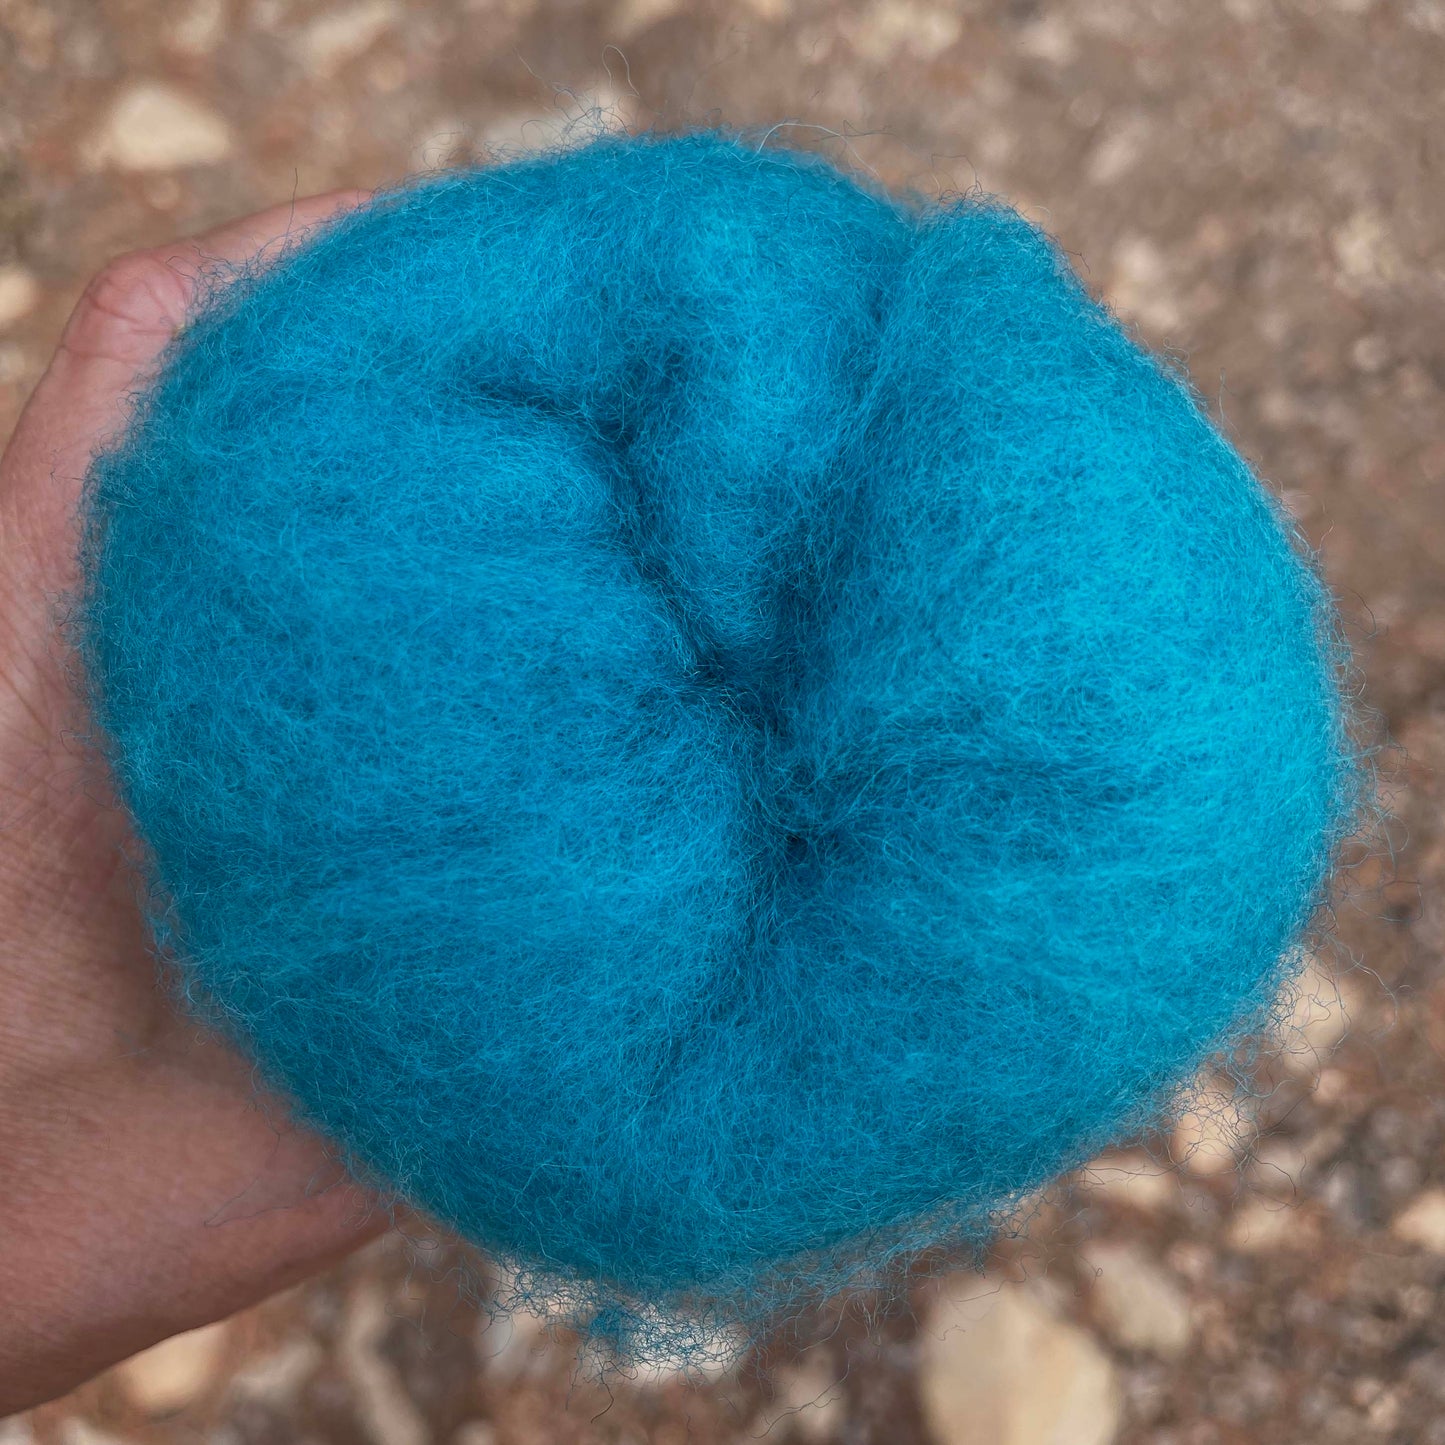 Carded Wool For Felting, Needle Felting Batting, Turquoise Blue  ( 96 )